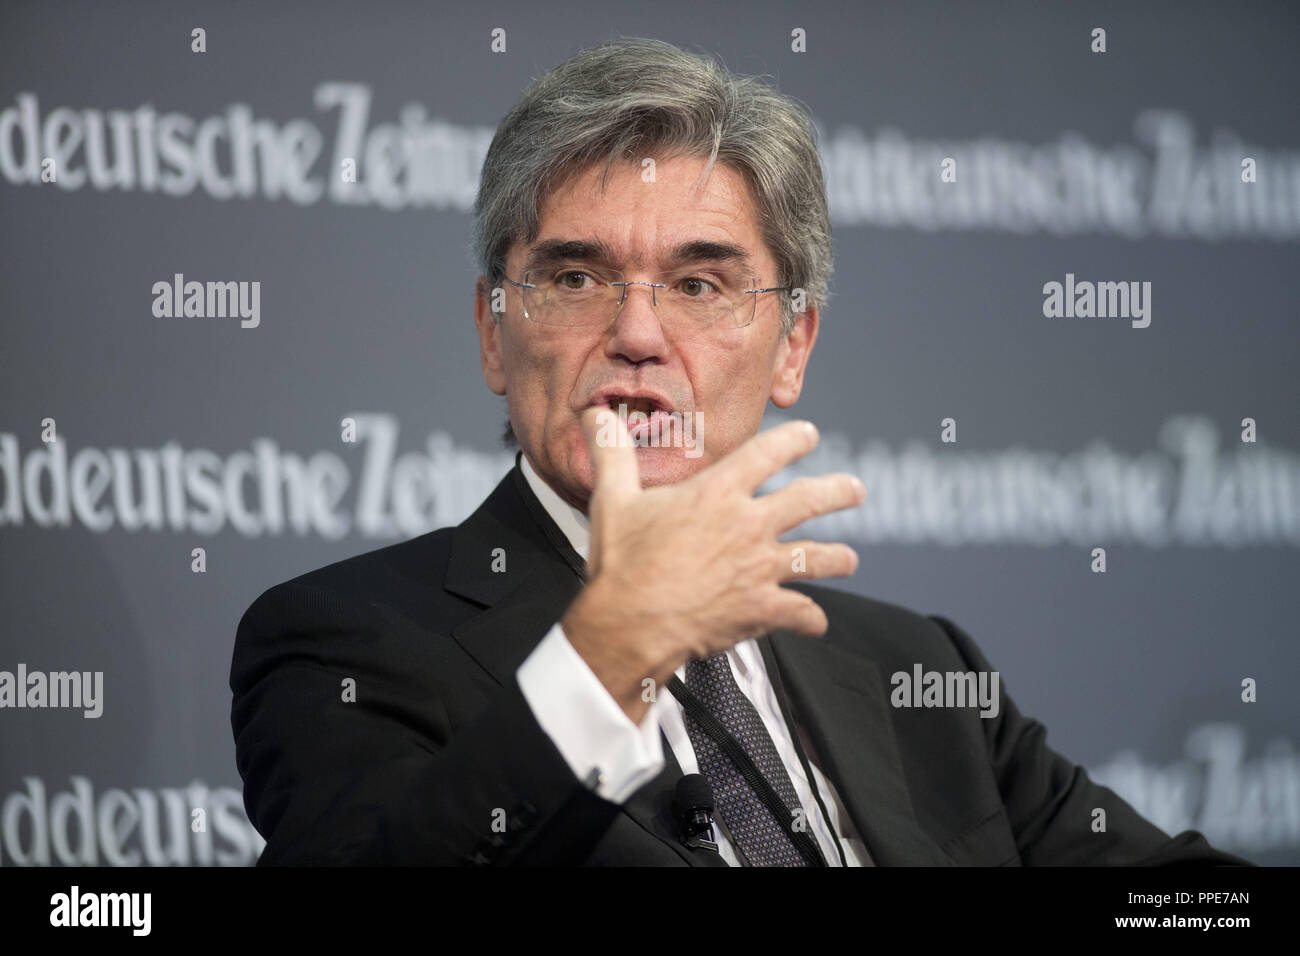 Joe Kaeser, directeur général de Siemens AG, au Sommet économique de la Sueddeutsche Zeitung dans l'hôtel Adlon à Berlin. Banque D'Images